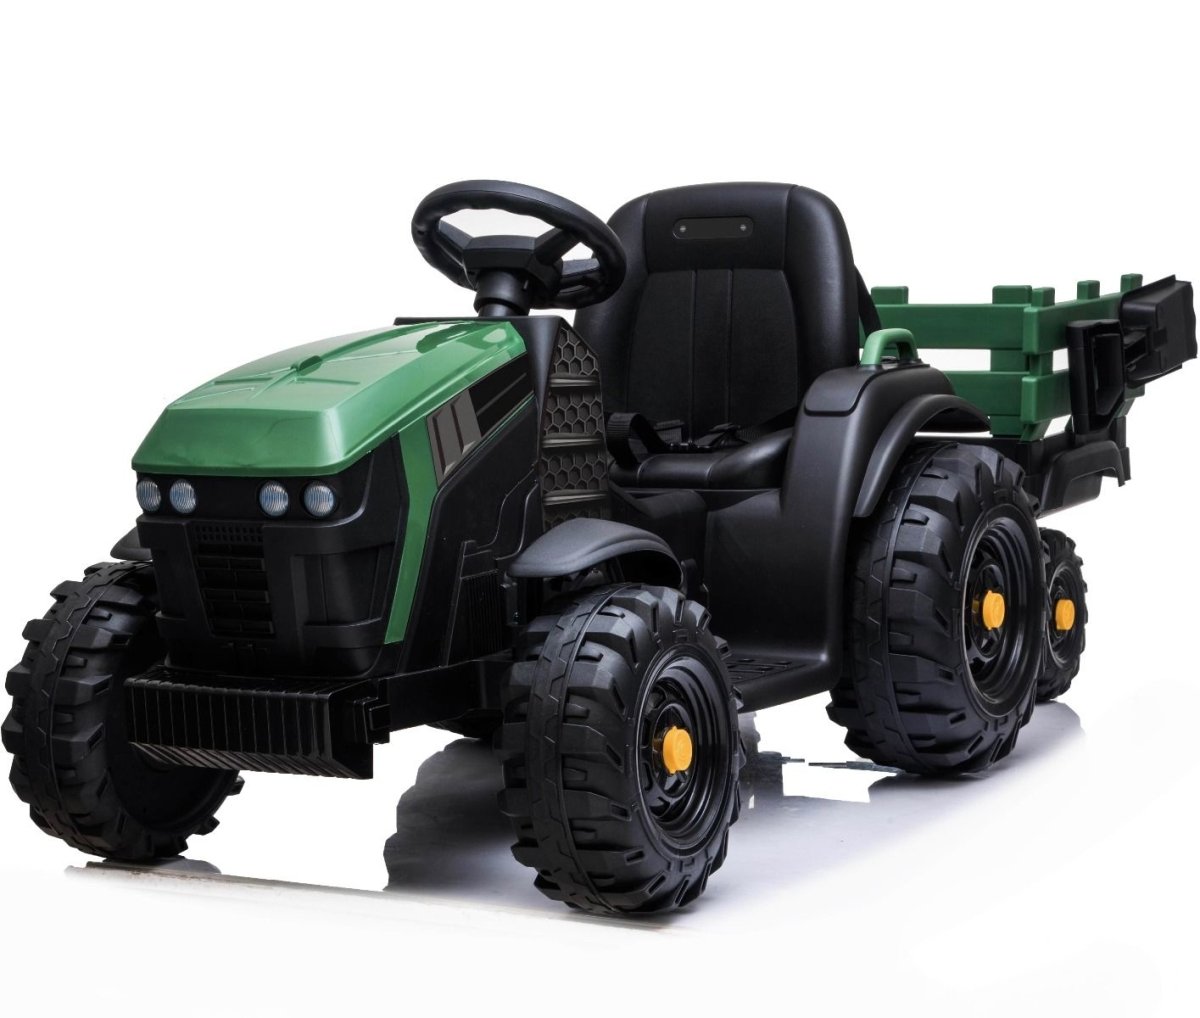 FARMER TRACTOR 12V GREEN FULL OPTIONS - Big Cars For Kids